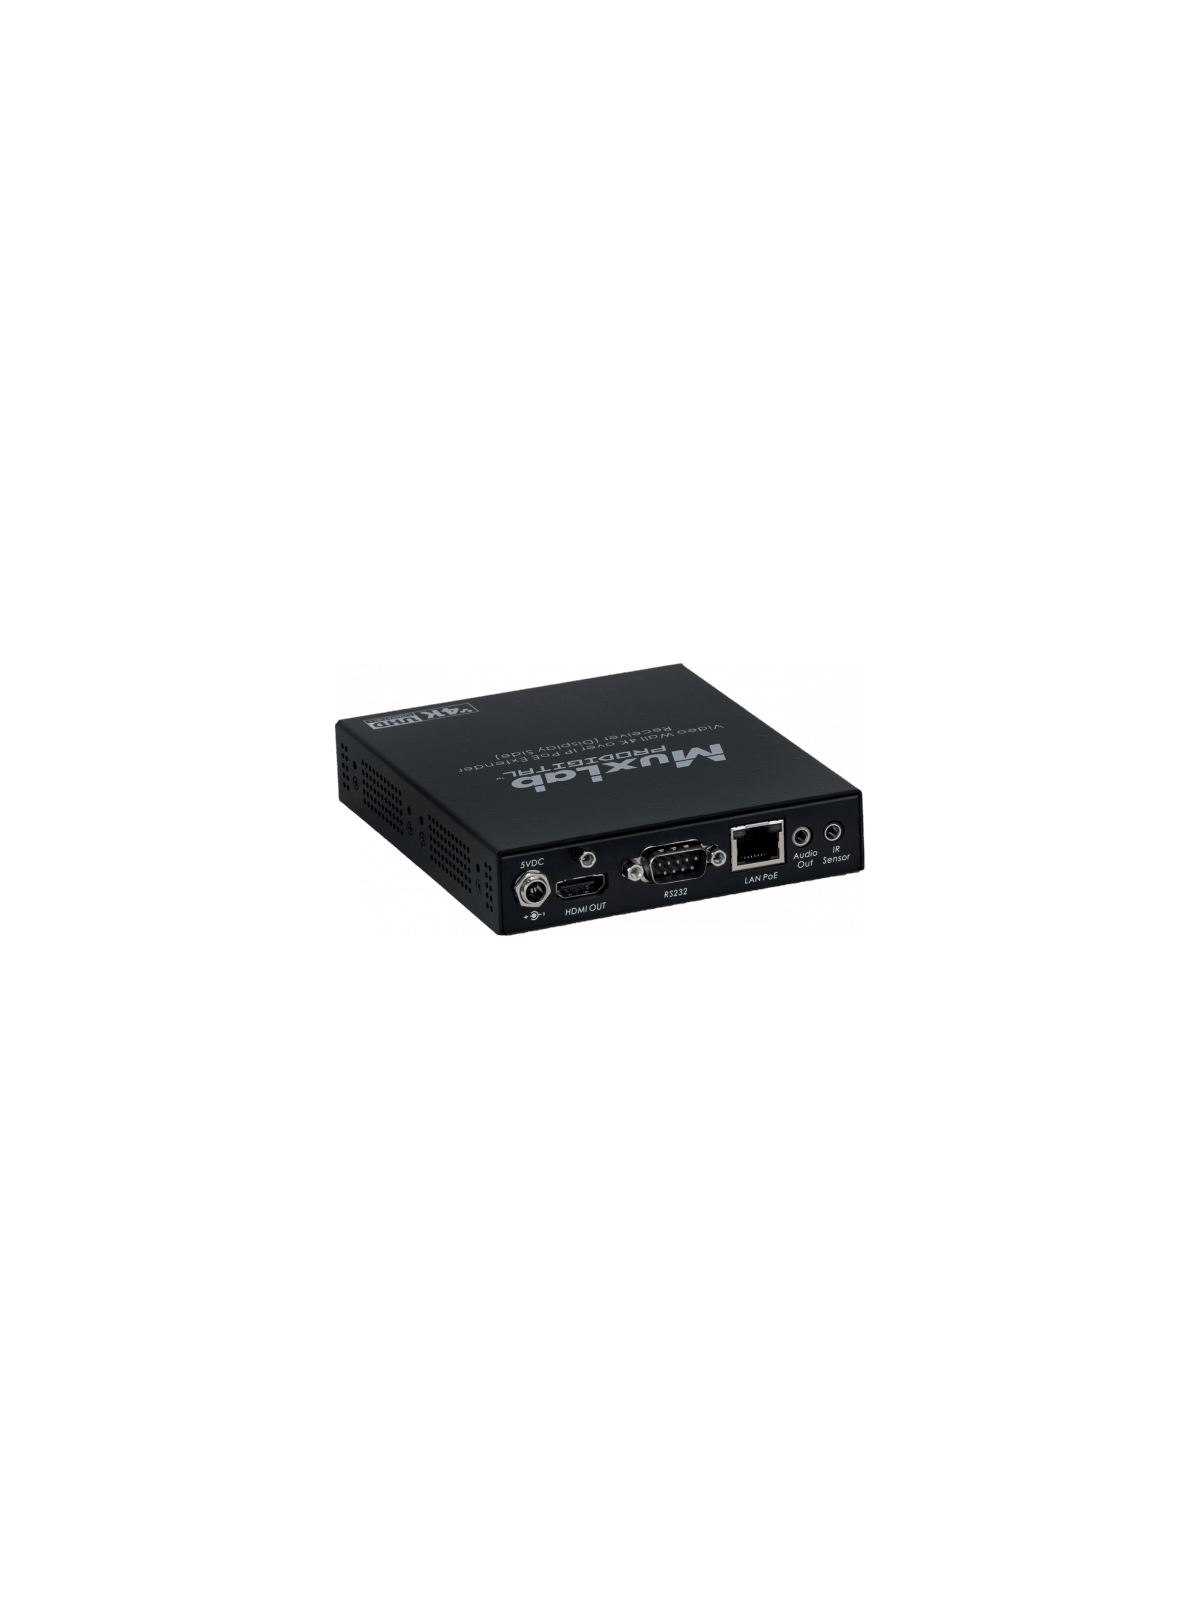 MUXLAB - Récepteur HDMI 4K